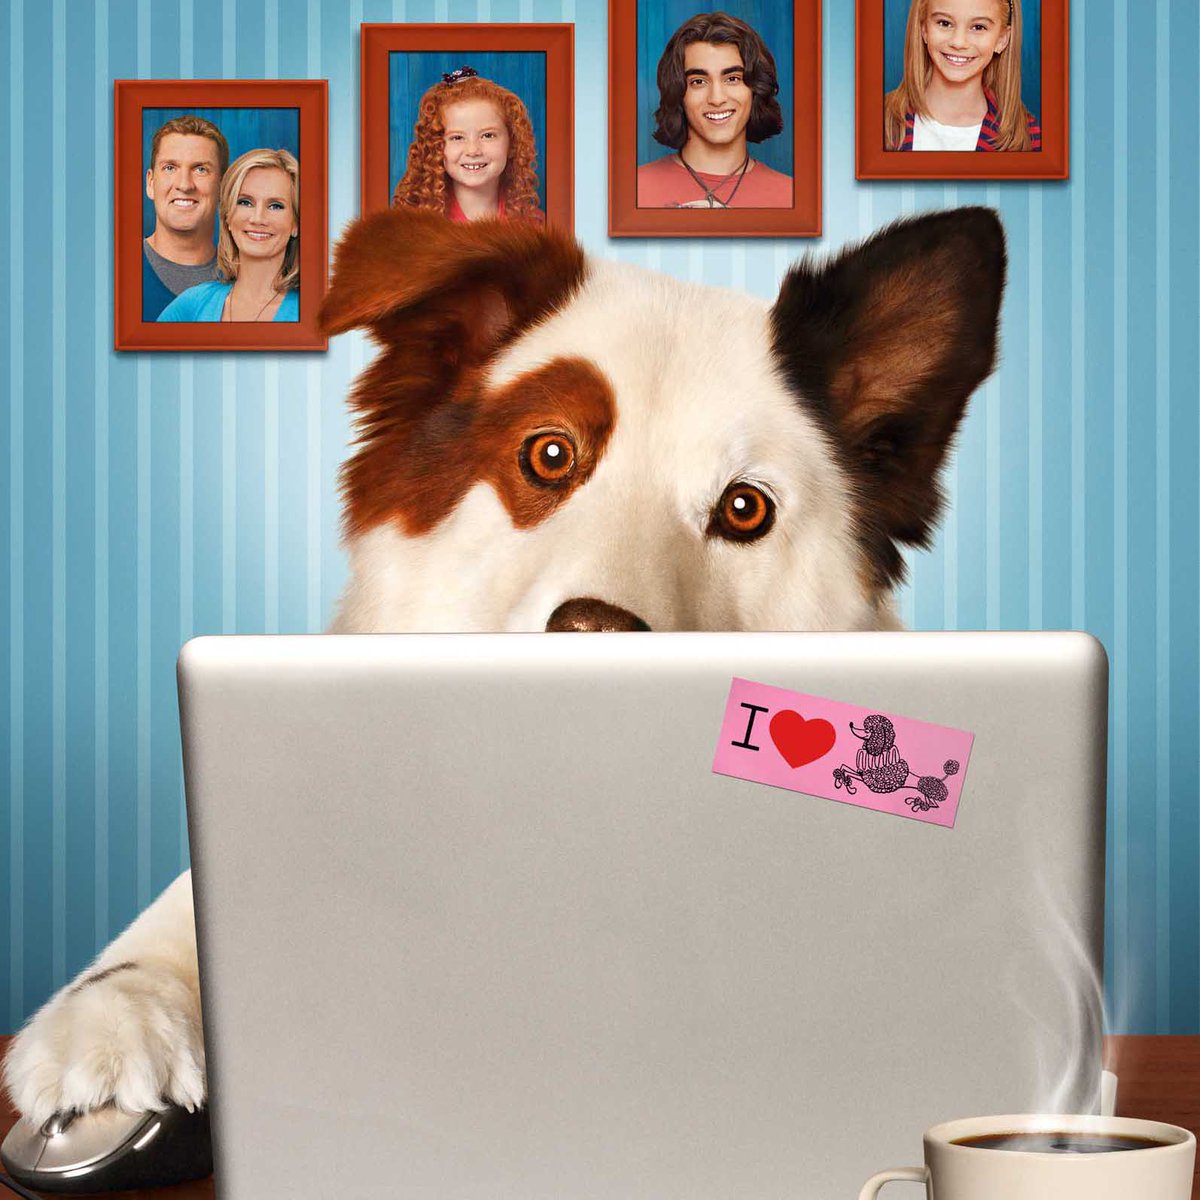 ディズニーデラックス公式 ディズニー チャンネル の人気ドラマ ブログ犬スタン シーズン1 配信開始 親の再婚で暮らし始めた新しい家族 仲を深めるために飼い始めた犬は なんと言葉を話しブログまで書くスーパー ドッグだった ディズニー